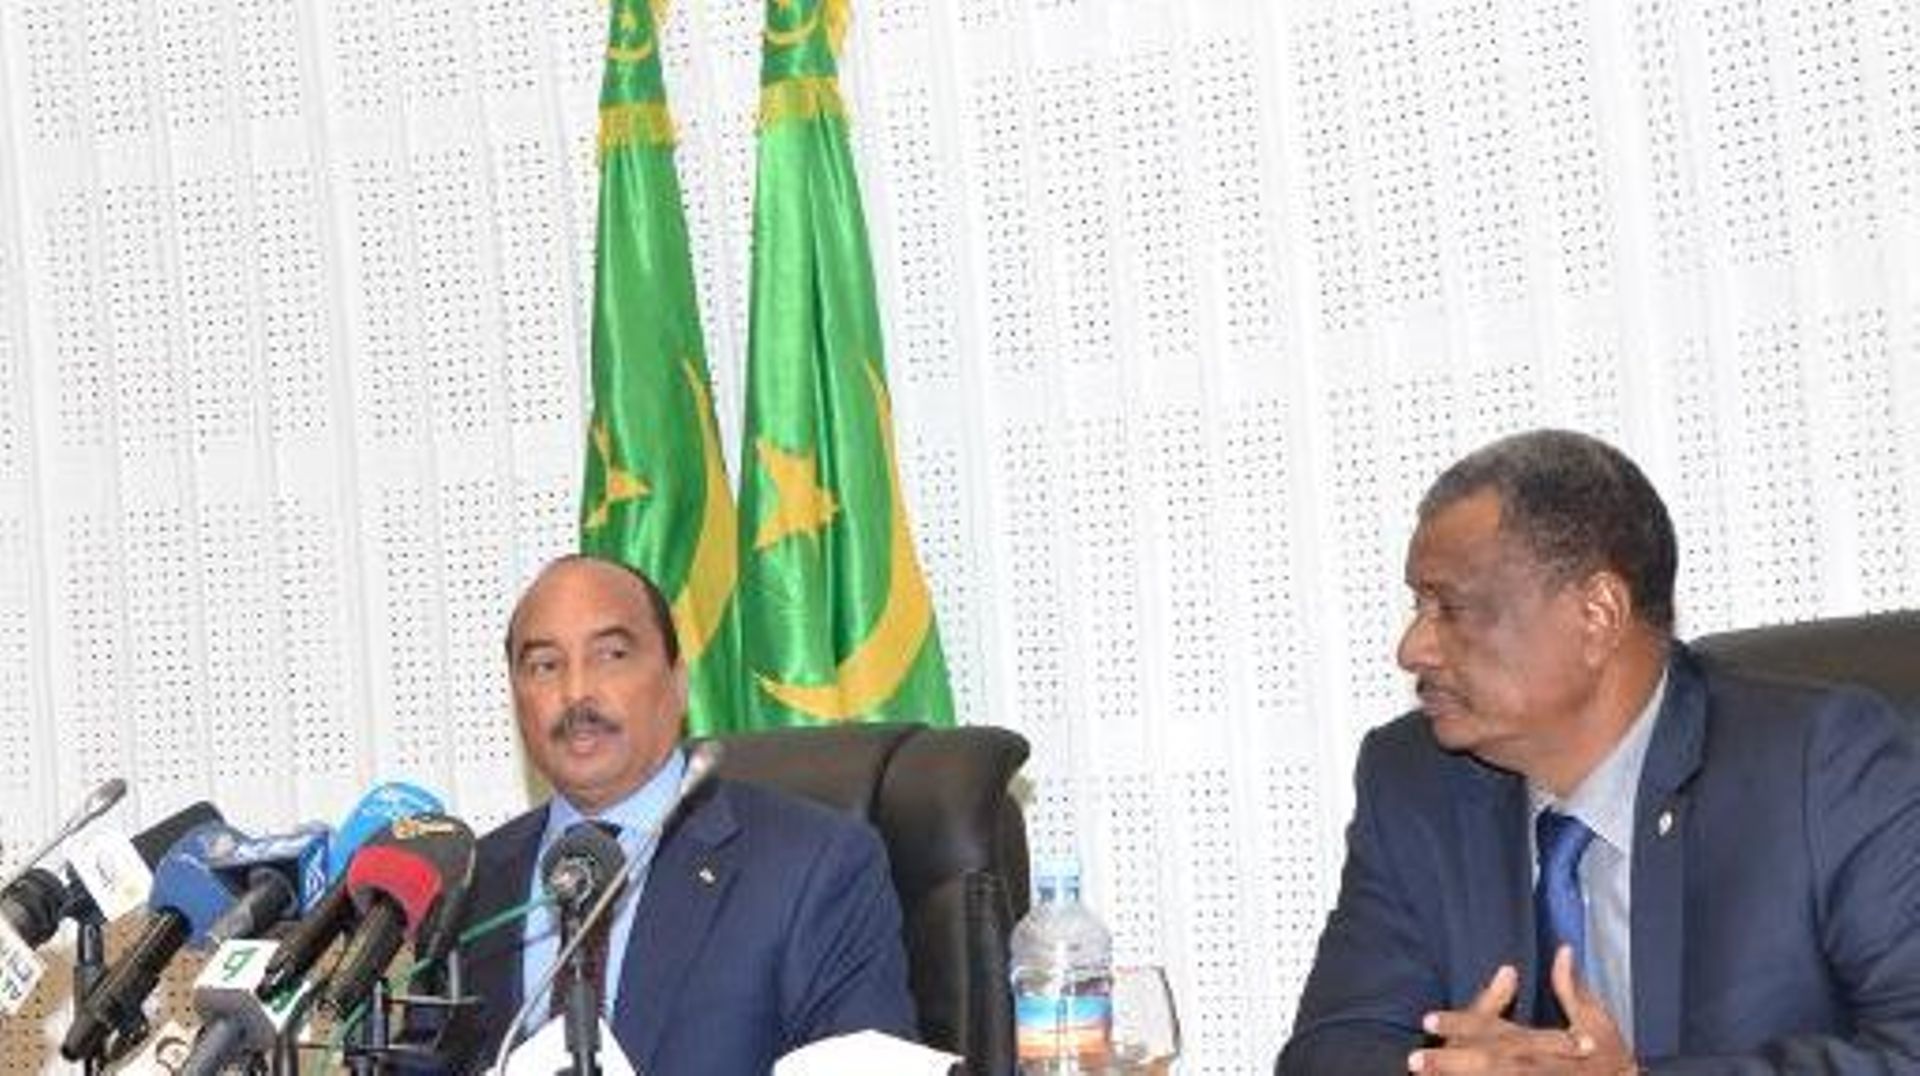 Le président mauritanien Mohamed Ould Abdel Aziz (g) à une conférence de presse, lors d'un sommet sur la sécurité du Sahel, au côté du Nigérien secrétaire général du G5 du Sahel Najim El Hadj Mohamed le 19 décembre 2014 à Nouakchott (Mauritanie)